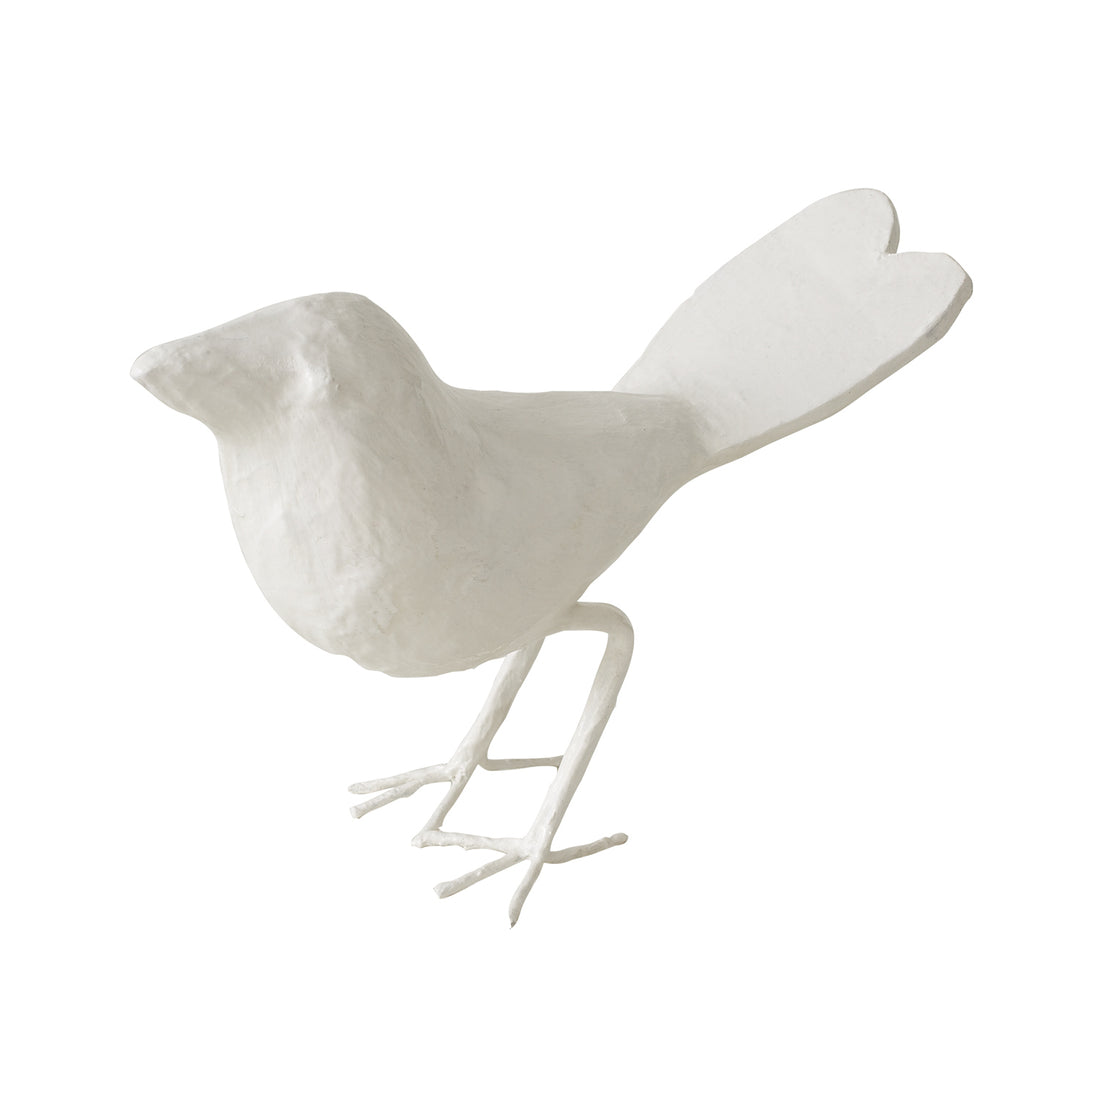 Love Bird by Stray Dog Designs, papier mache